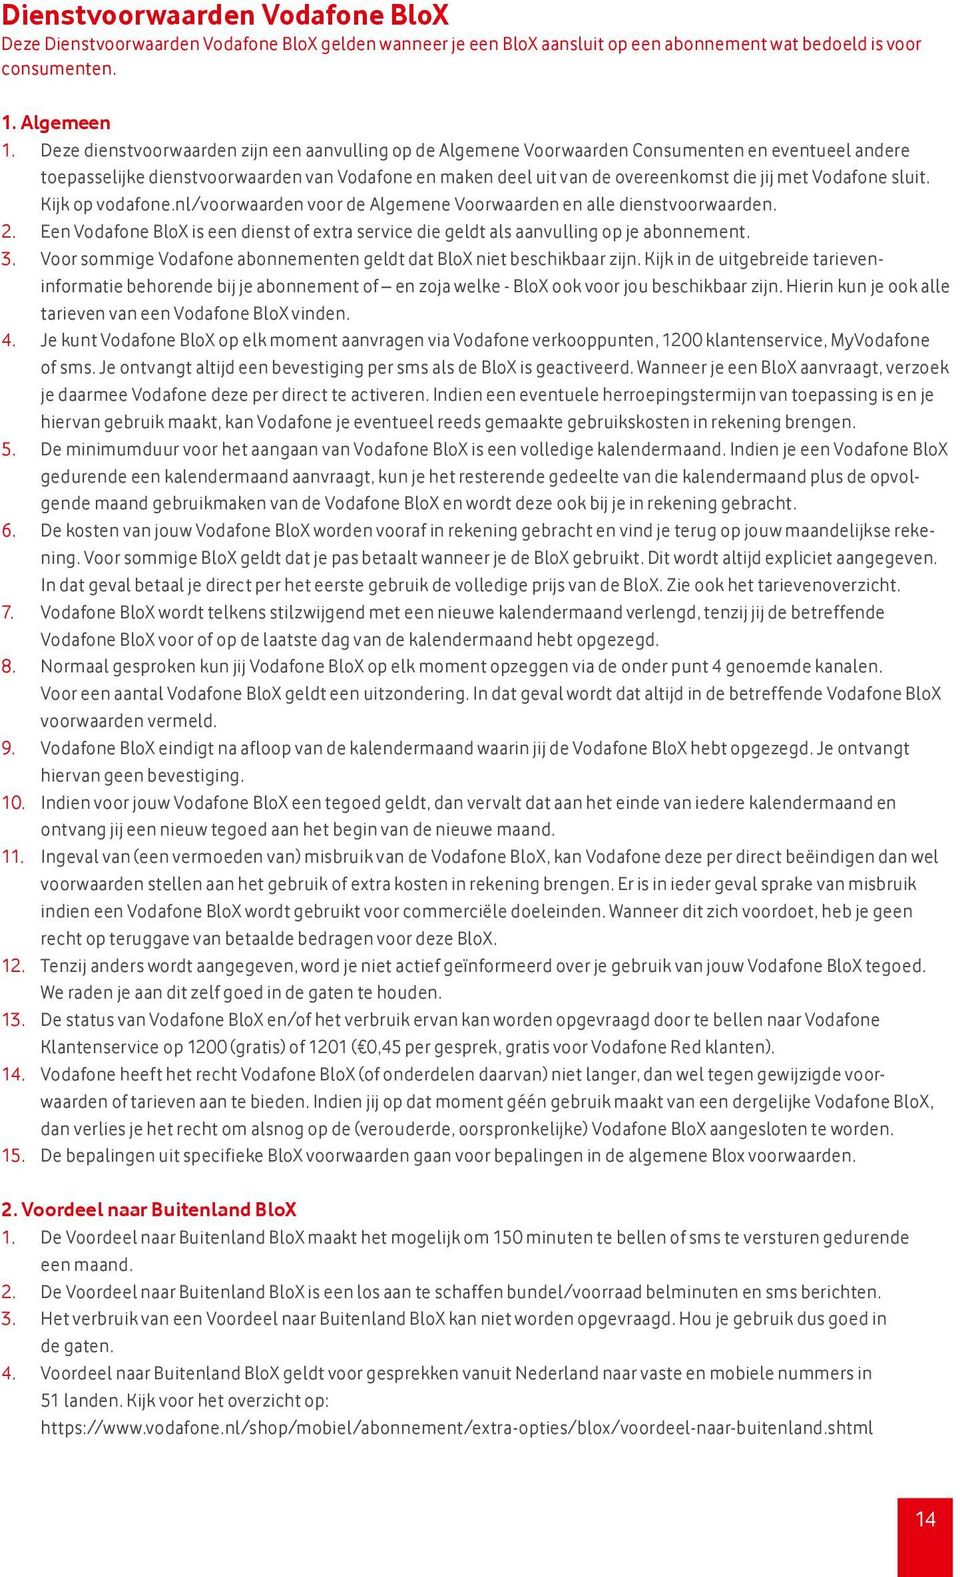 Vodafone sluit. Kijk op vodafone.nl/voorwaarden voor de Algemene Voorwaarden en alle dienstvoorwaarden. 2. Een Vodafone BloX is een dienst of extra service die geldt als aanvulling op je abonnement.